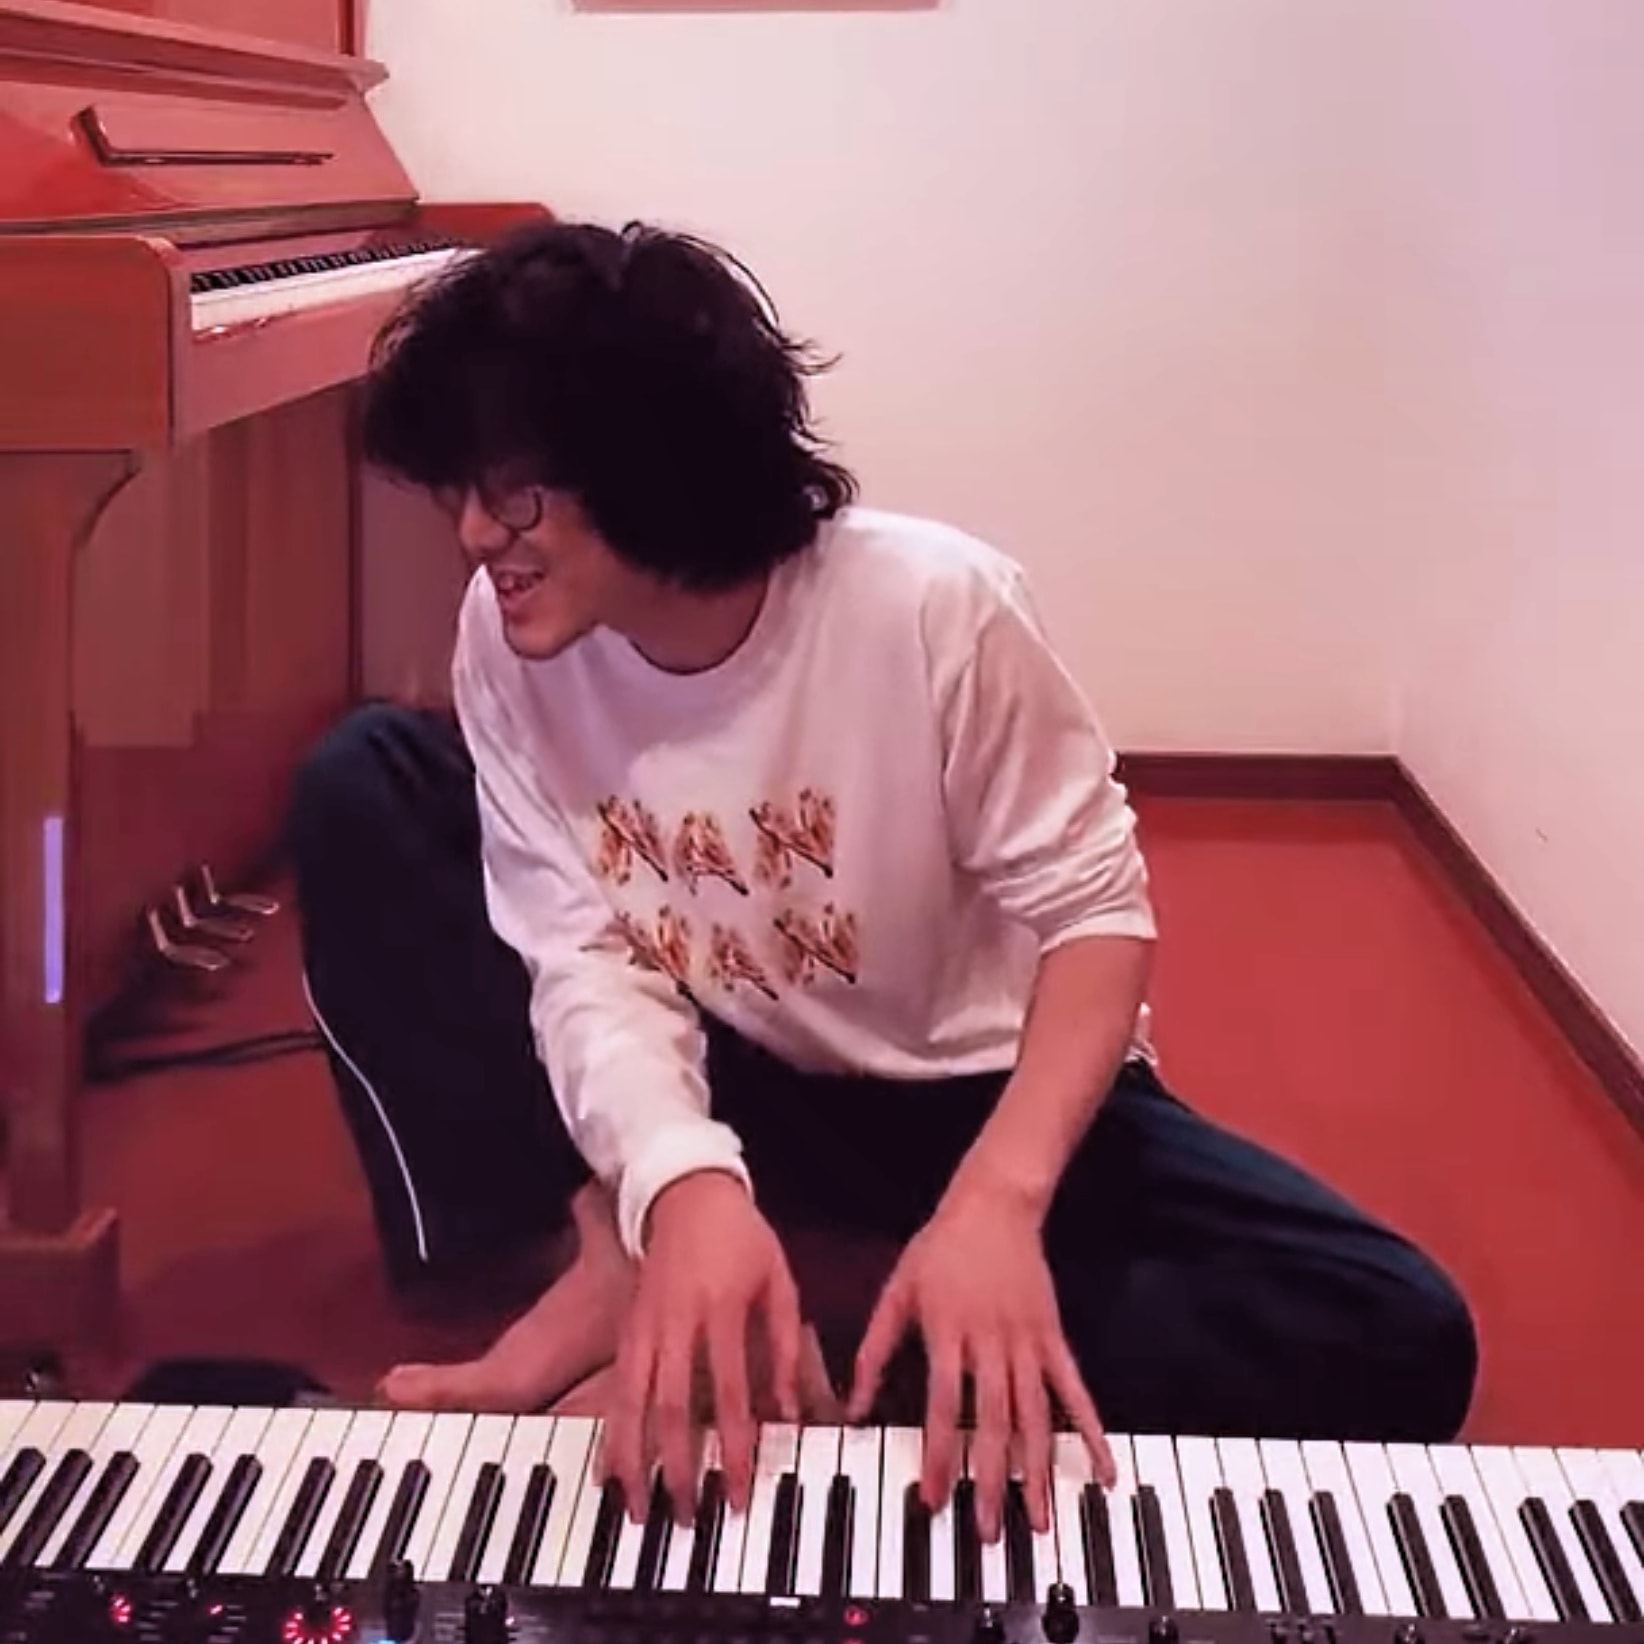 たかたか 藤井風 Youtubeライブ 今日もピアノ最高やった 小沢健二 Aiko キリンジ ドン キホーテの歌 うんこ座りでカーペンターズ T Co Fzmeunkbhx T Co 91pmg1l0z4 Twitter